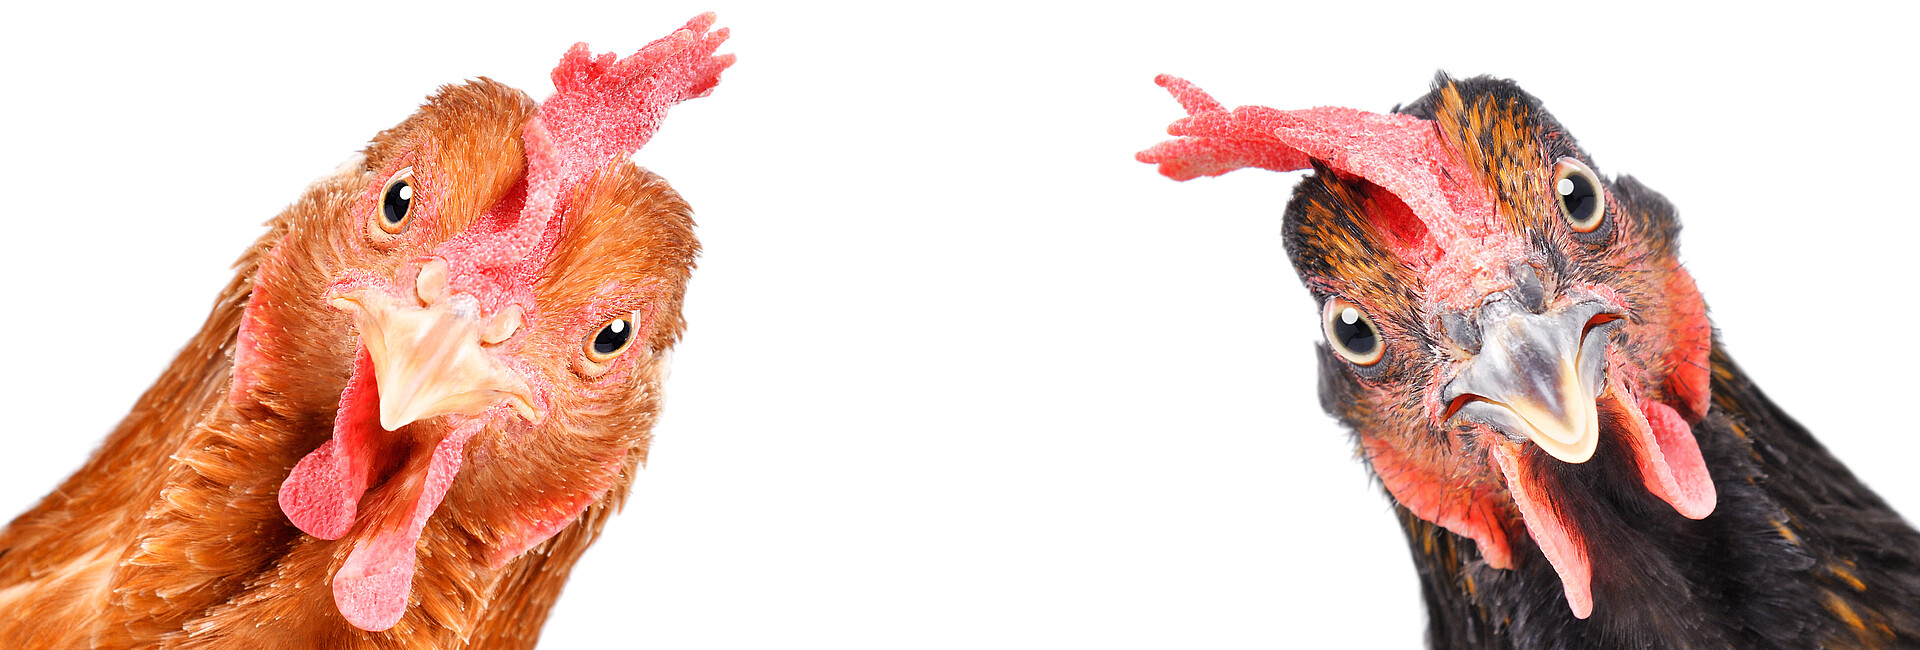 Zwei Hühner - ein hellbraunes Huhn in der linken Ecke und ein dunkelbraunes Huhn in der rechten Ecke